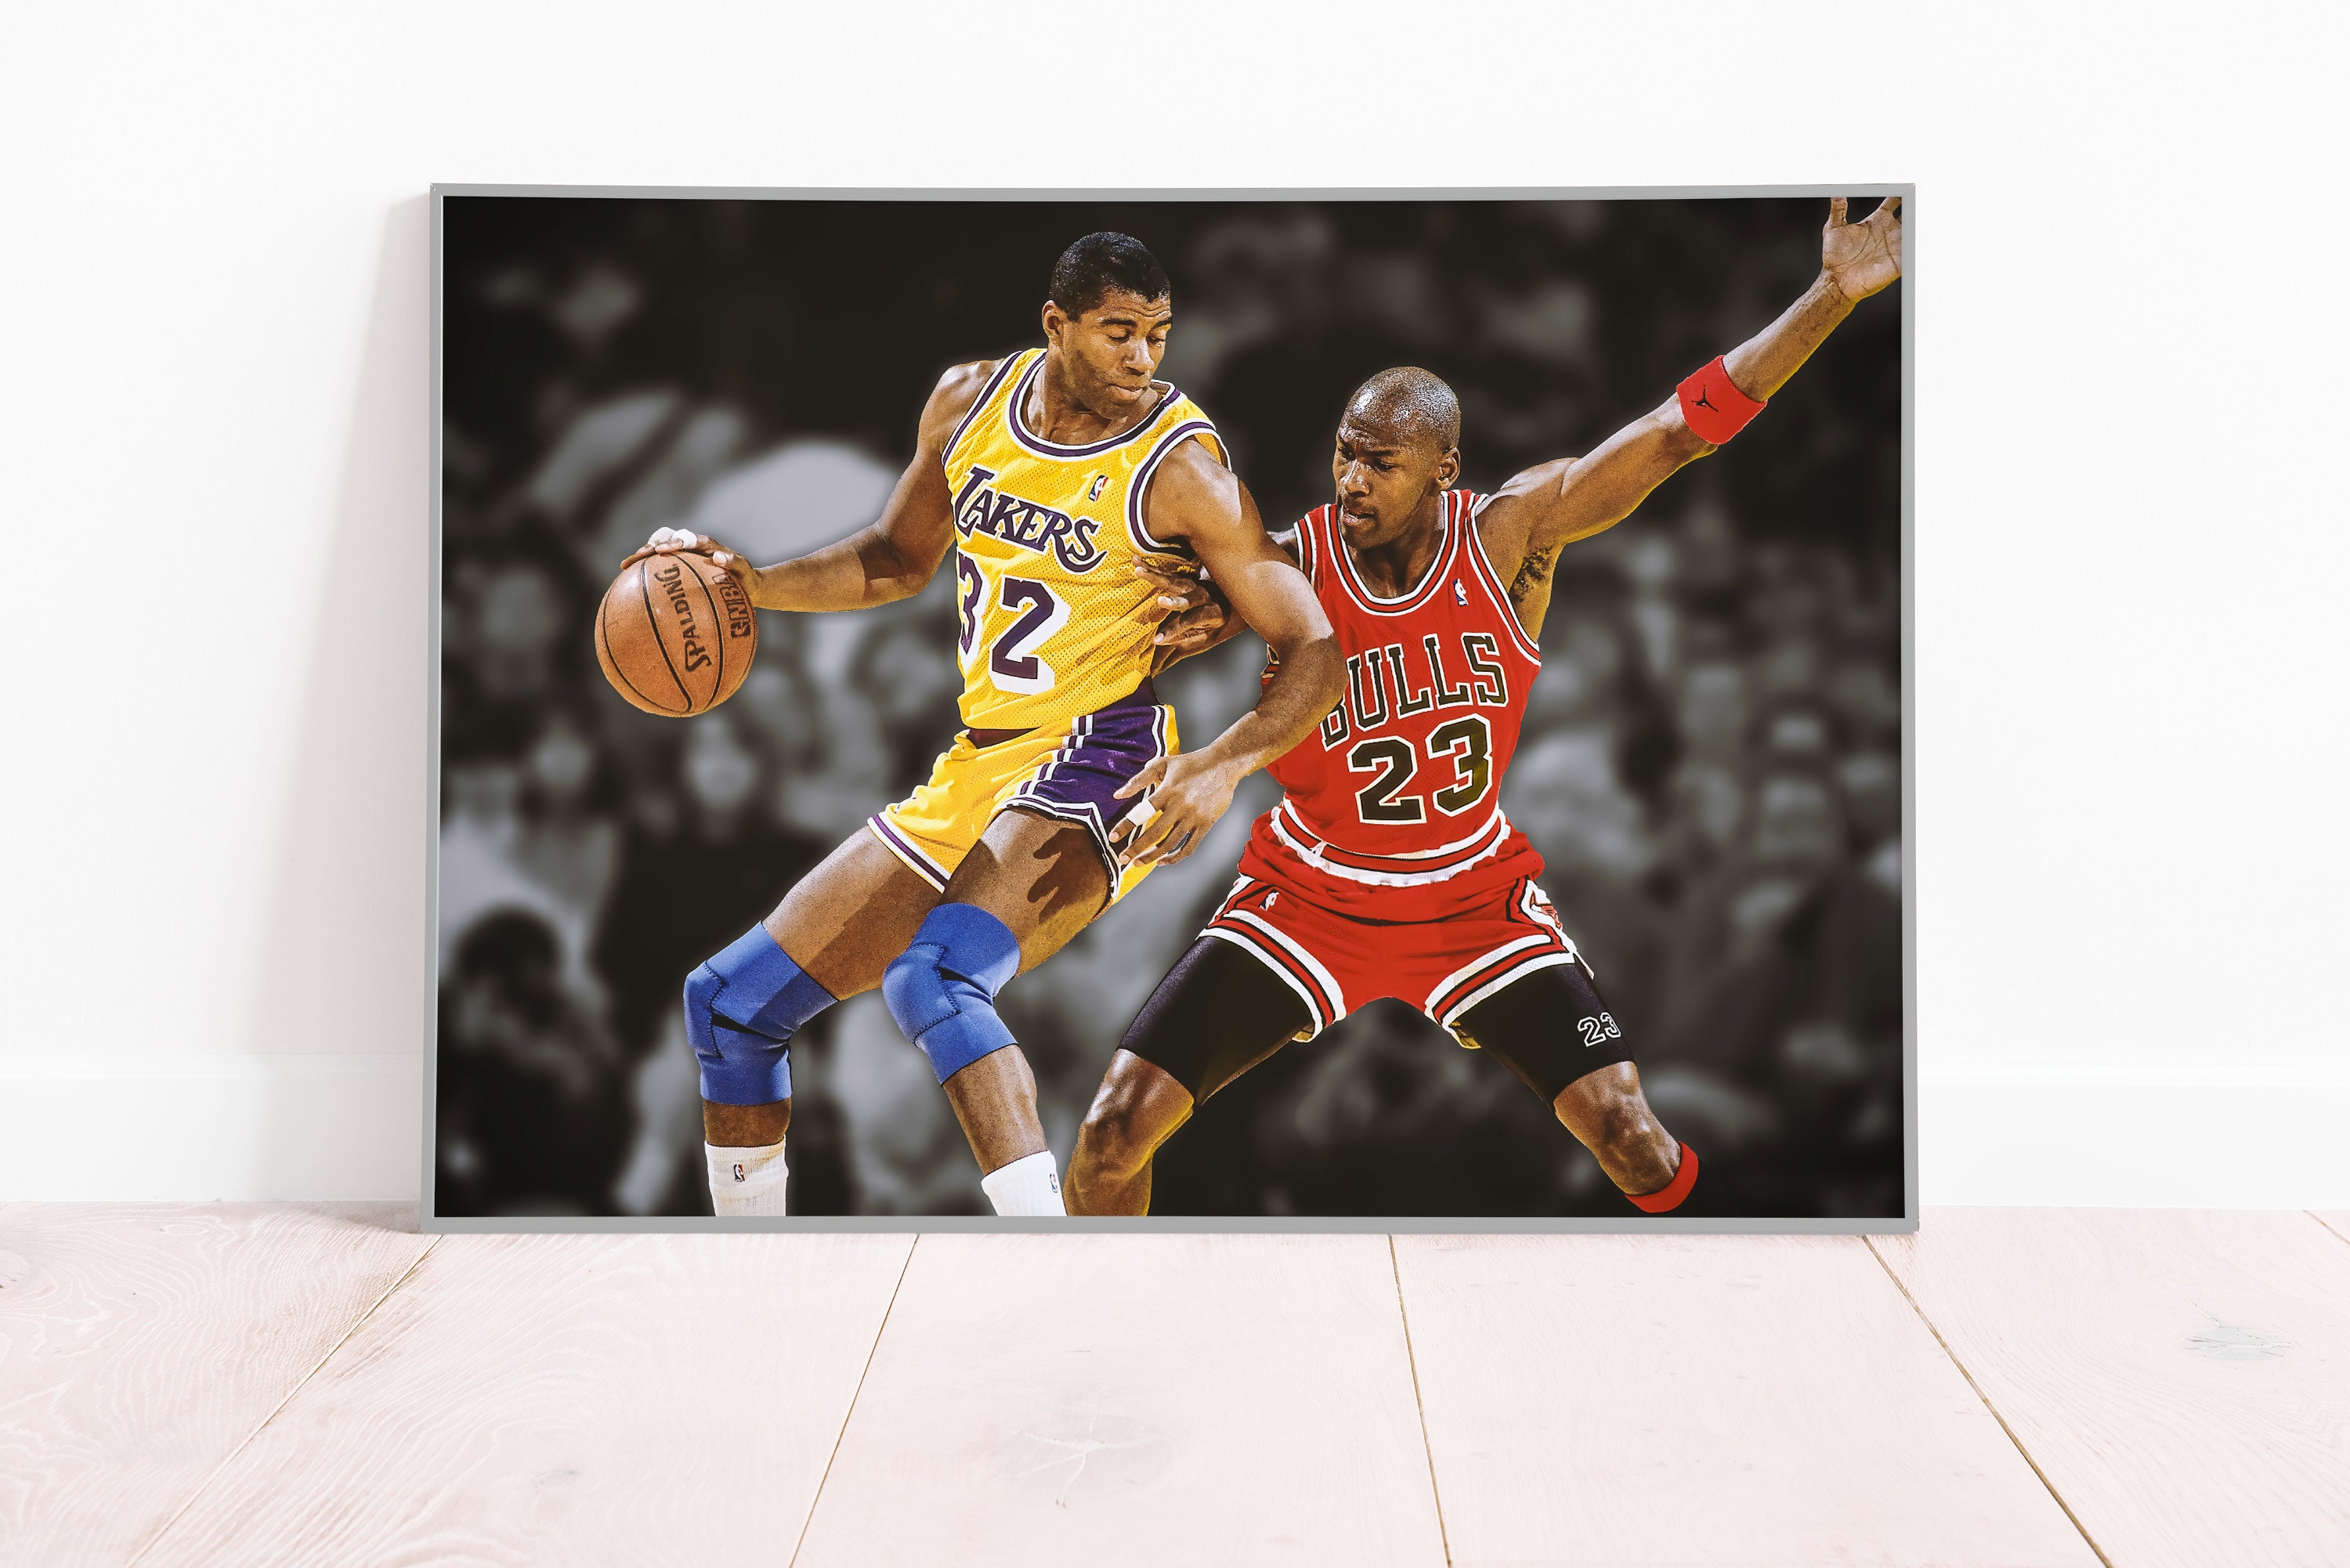 Pistons 89, Bulls 109  Nba basketball art, Nba legends, Detroit